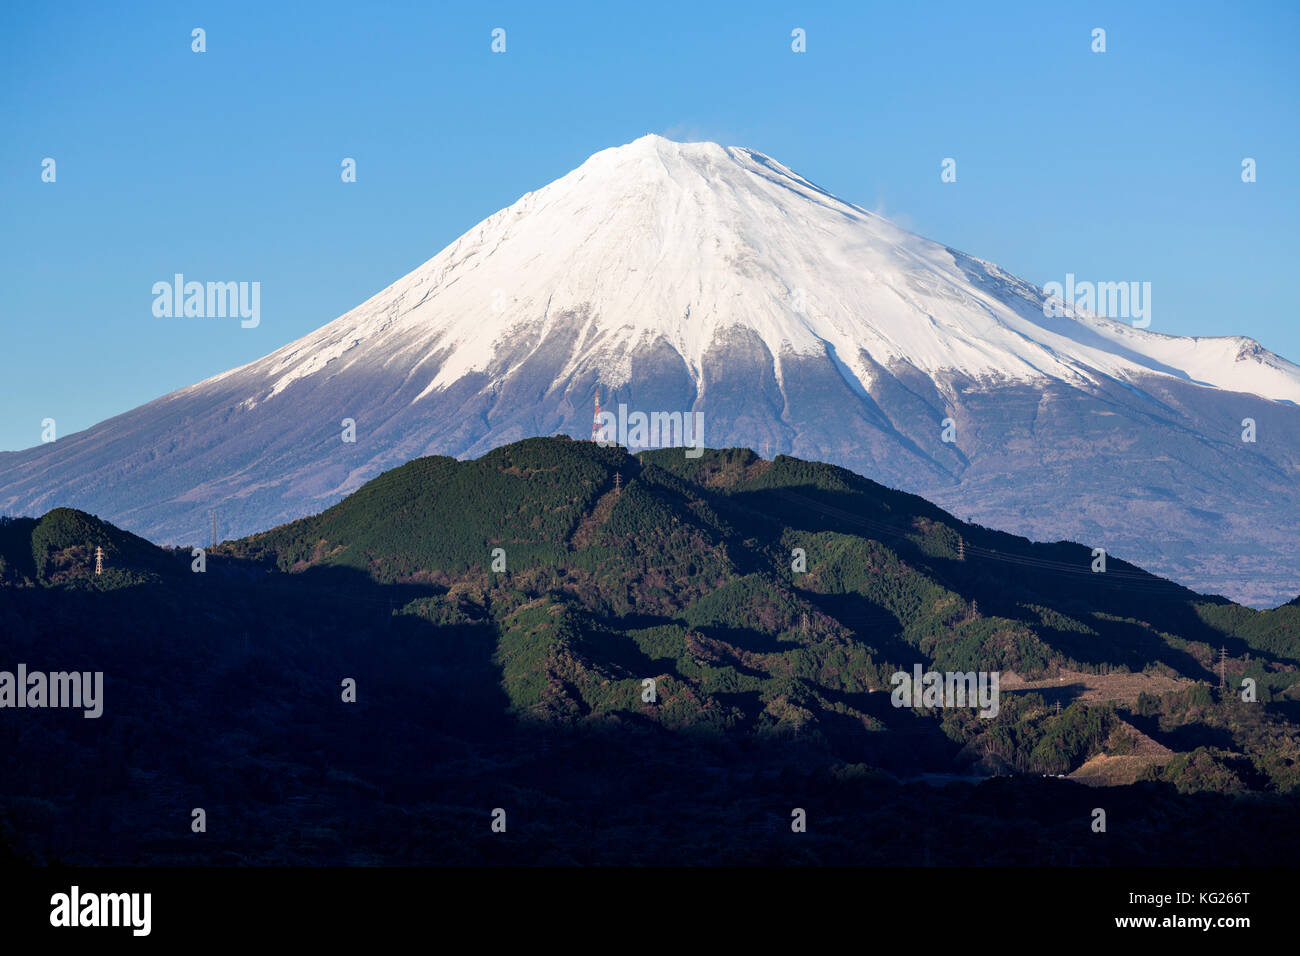 Mount Fuji, Weltkulturerbe der UNESCO, Fuji - hakone - izu Nationalpark, Shizuoka, Honshu, Japan, Asien Stockfoto